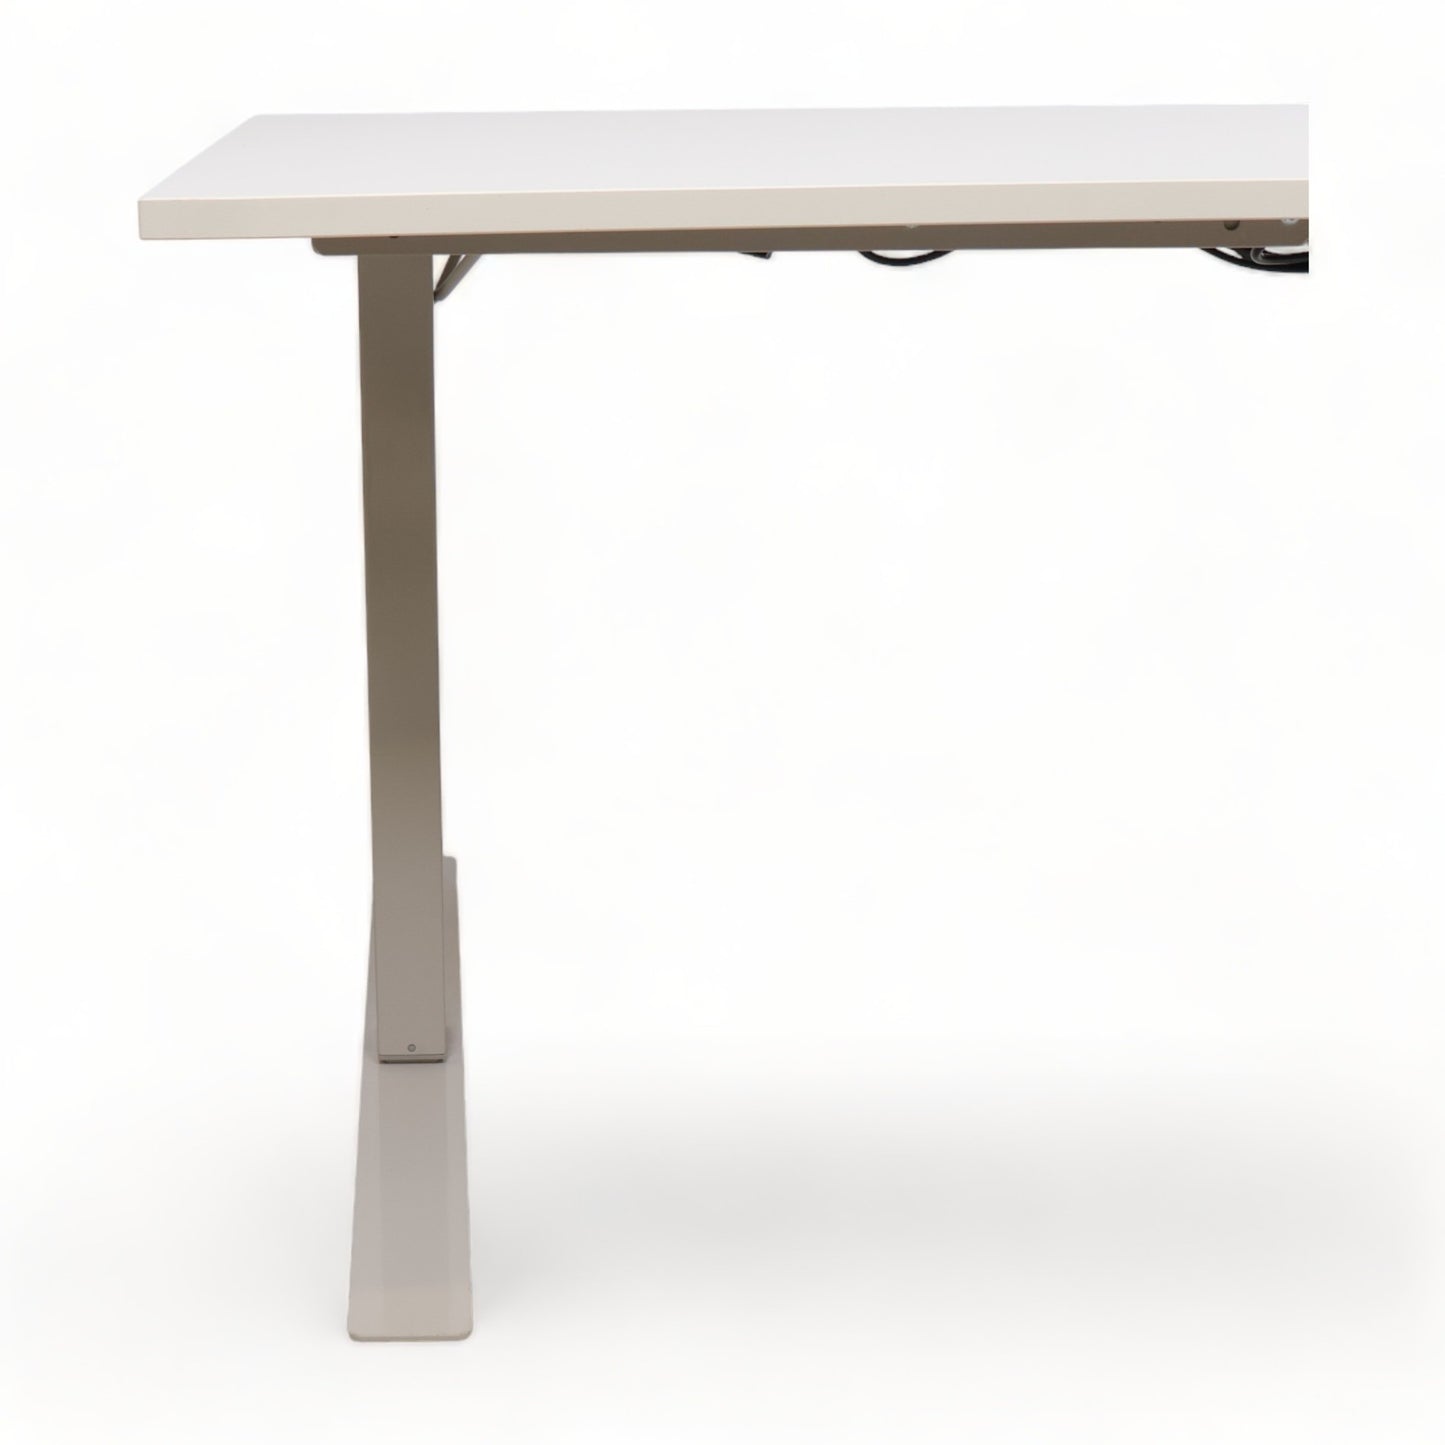 Kvalitetsikret | 160x80cm Elektrisk ståbord, hvit/grå